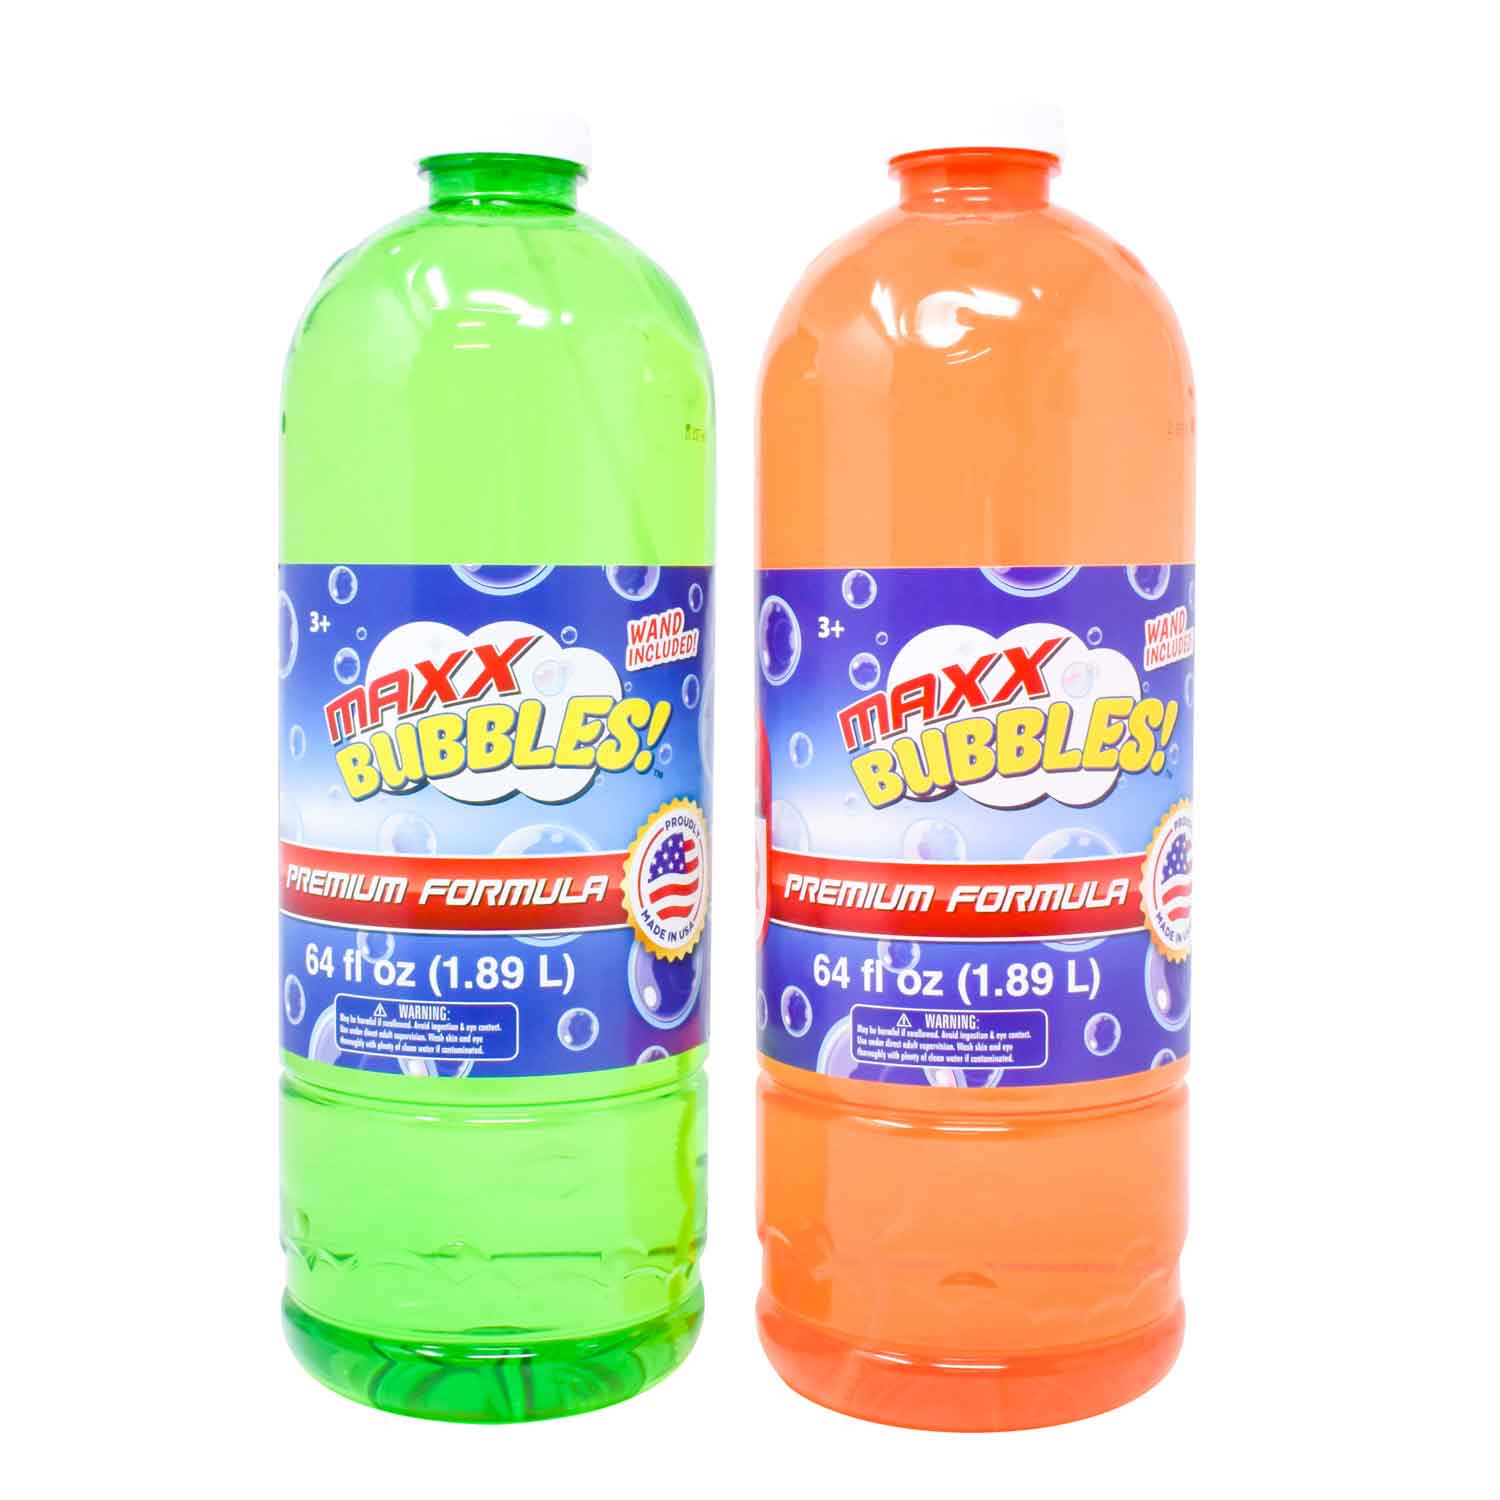 Maxx Bubbles Bubble Refill Solution